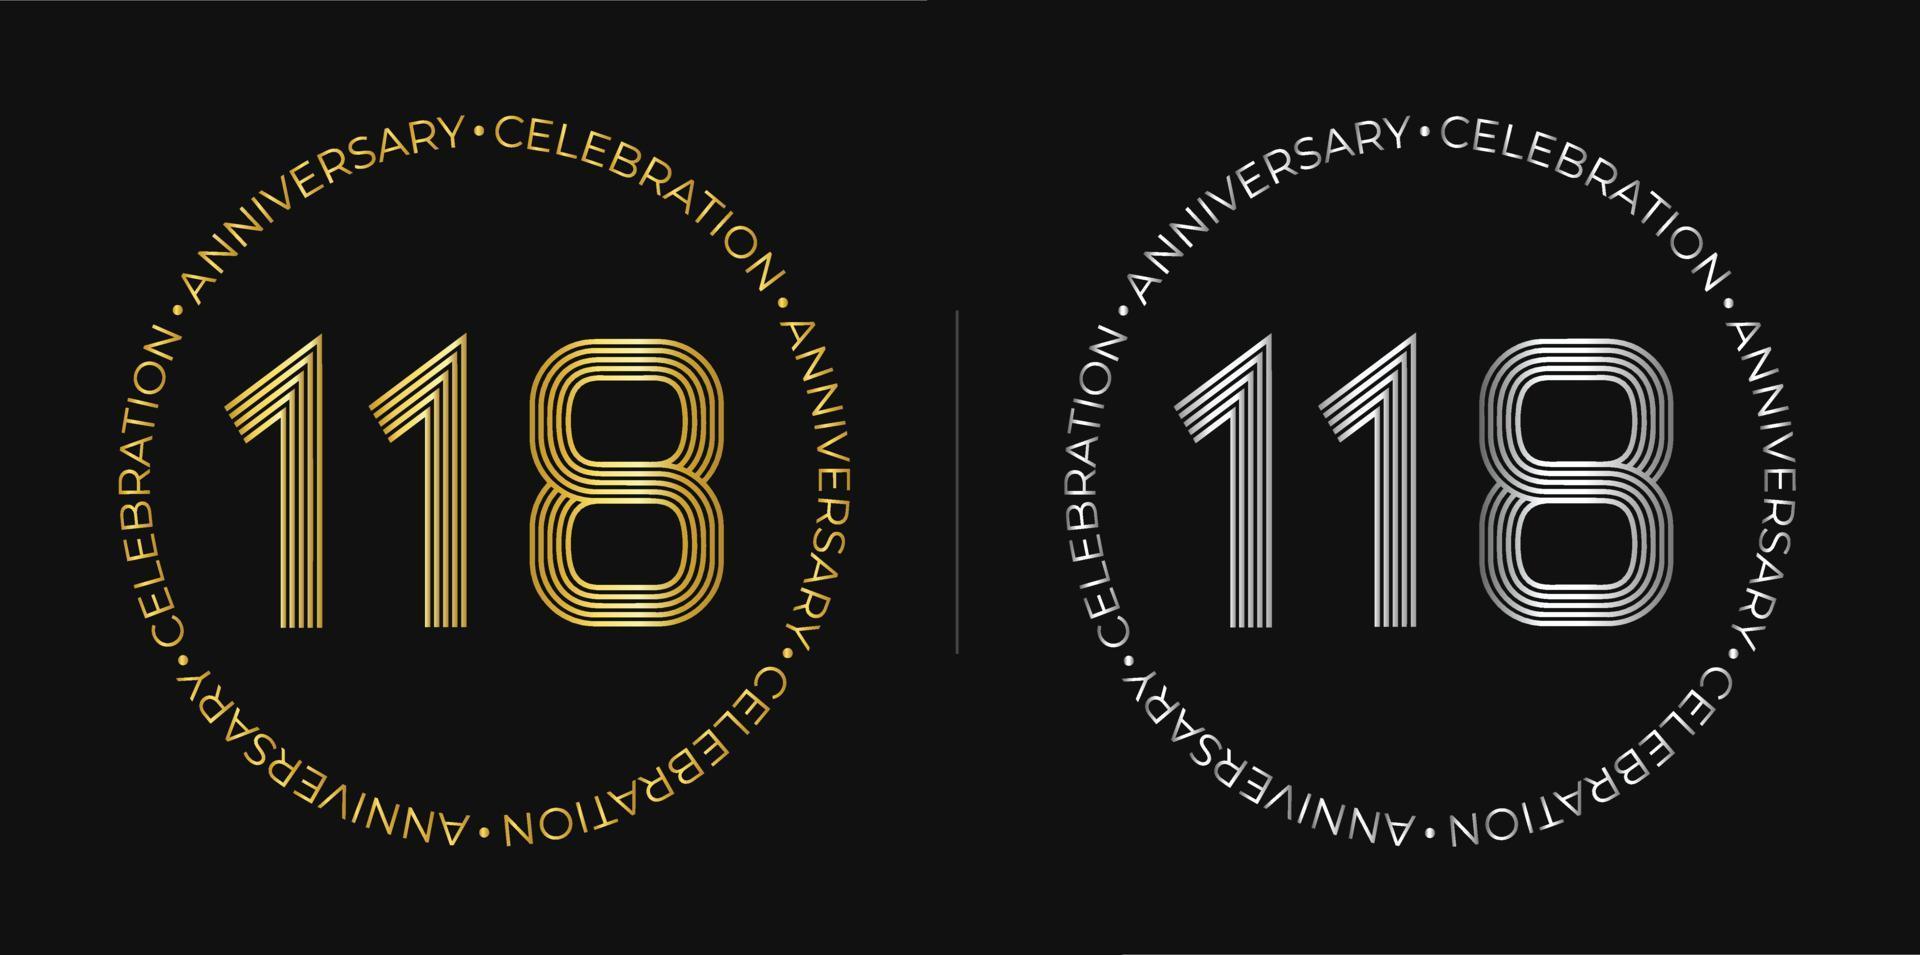 118 cumpleaños. pancarta de celebración de aniversario de ciento dieciocho diecisiete años en colores dorado y plateado. logo circular con diseño de números originales en líneas elegantes. vector